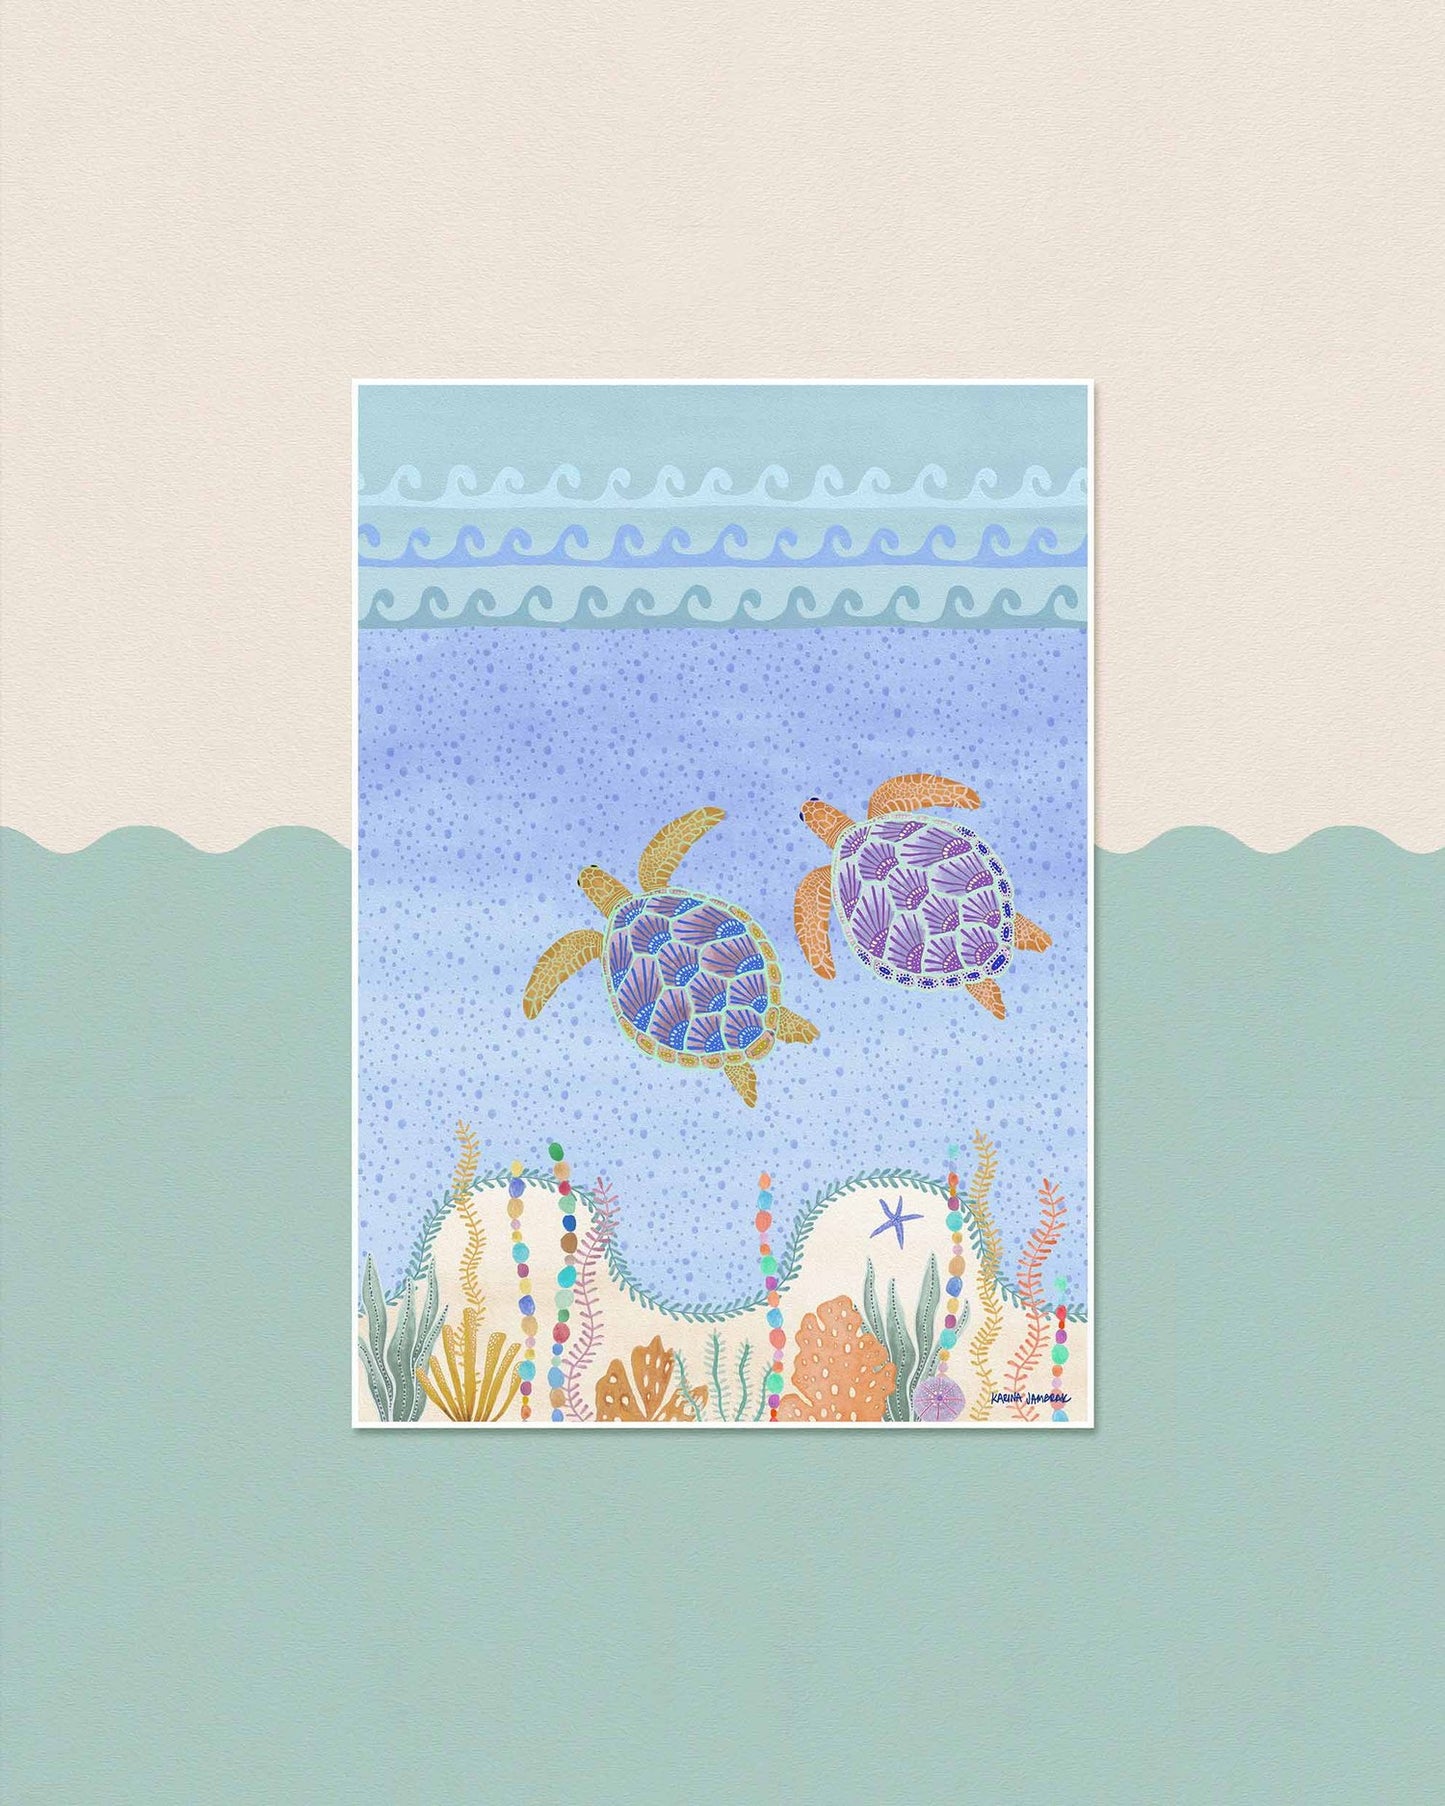 【karina jambrak art】turtle journey